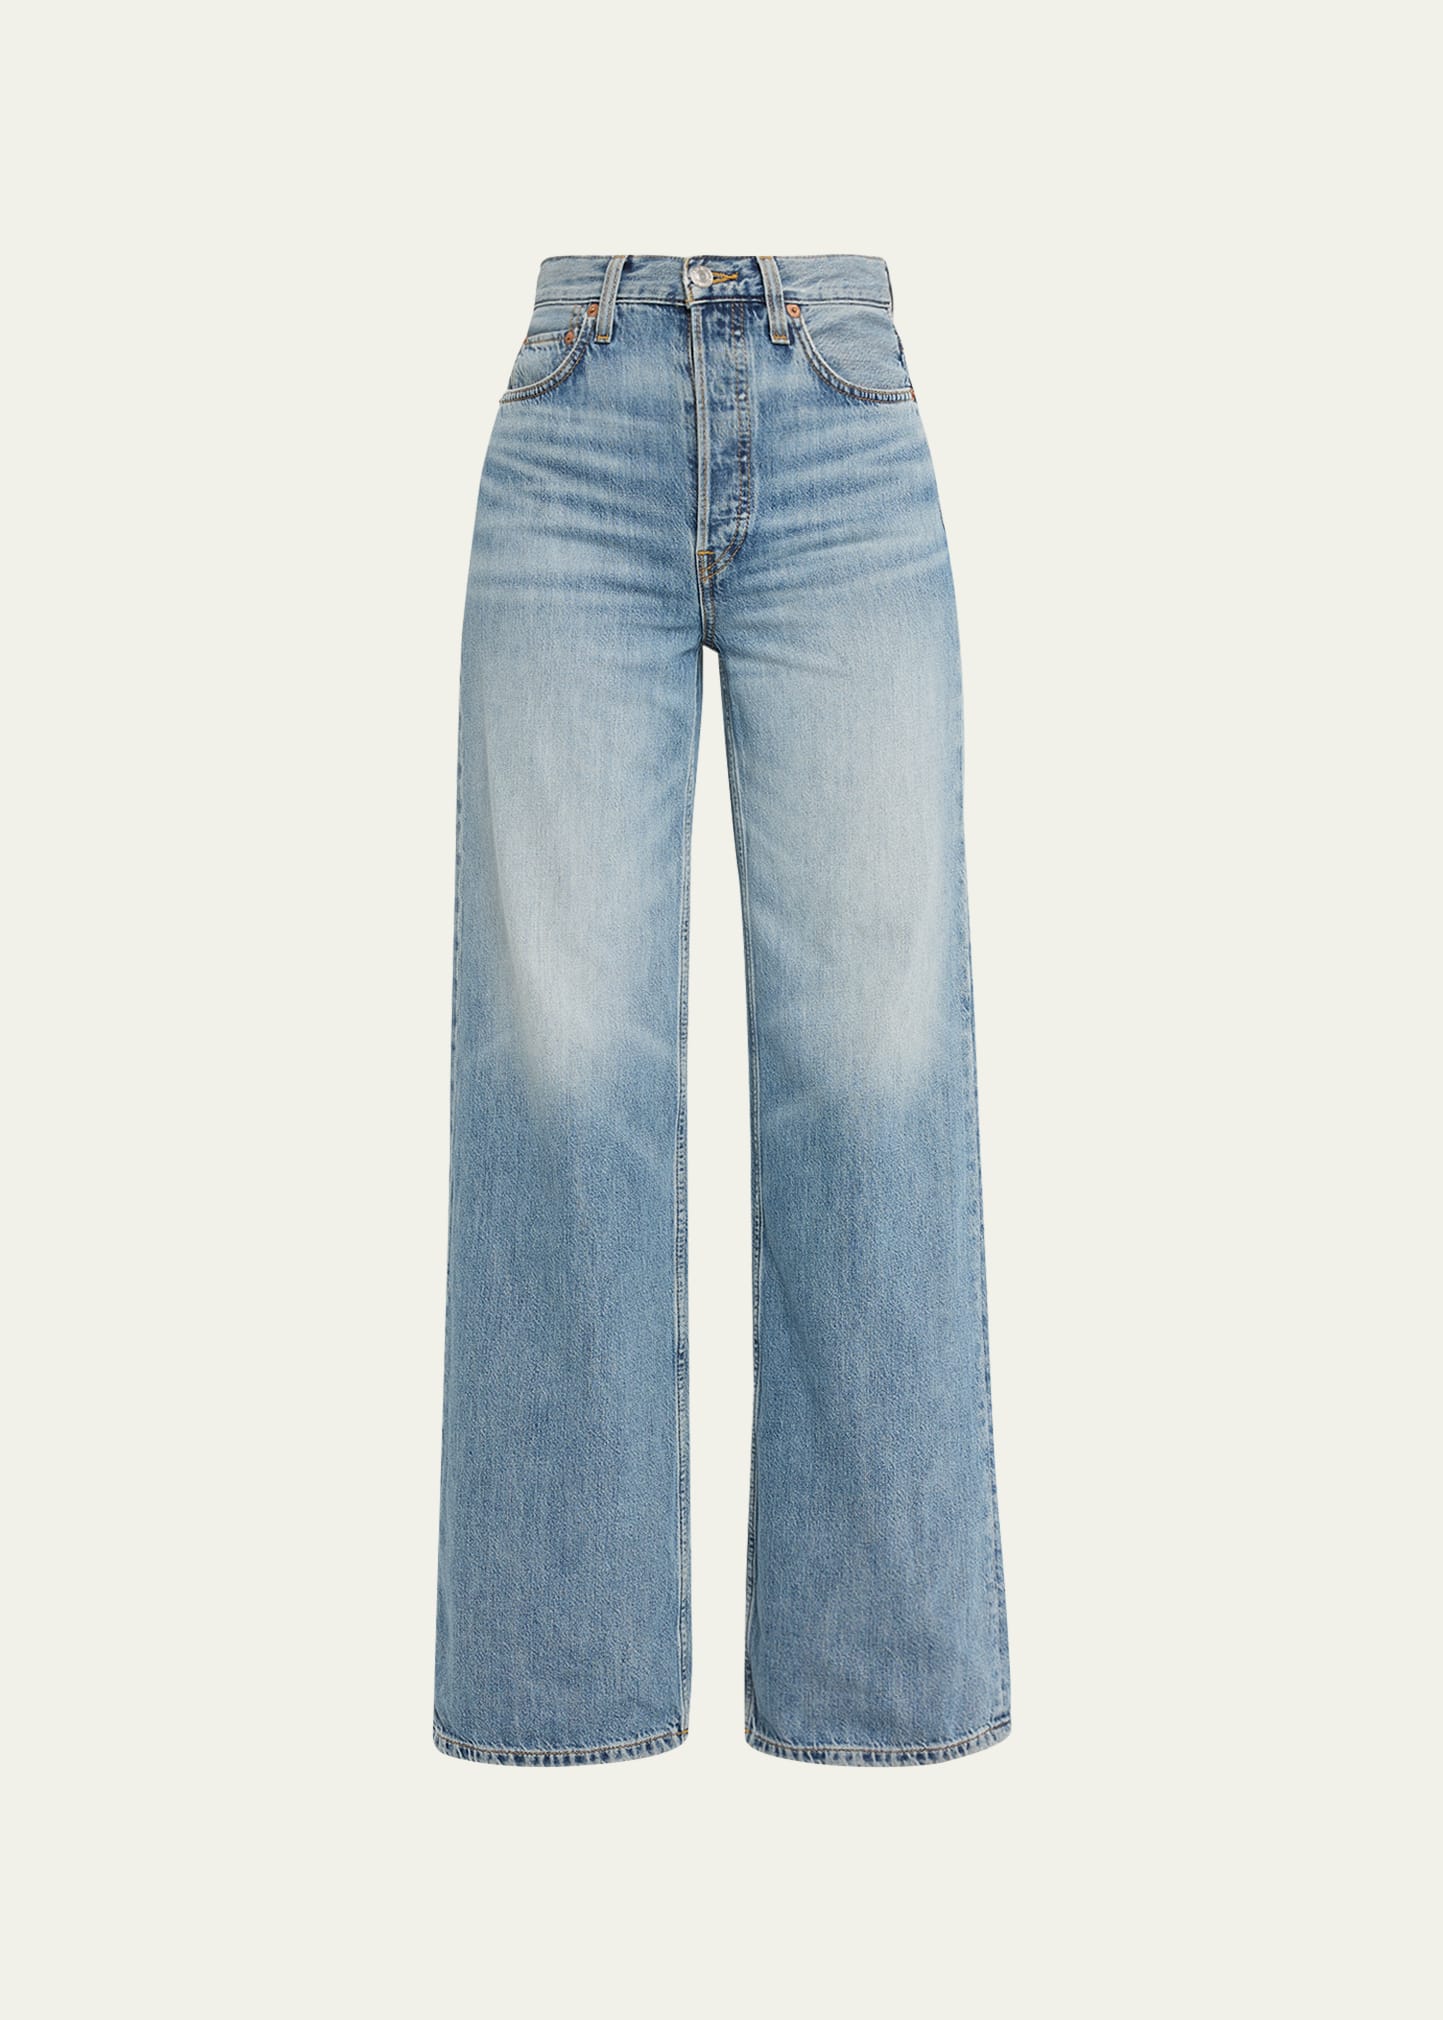 1970s Renard wide leg jeans 25 waist